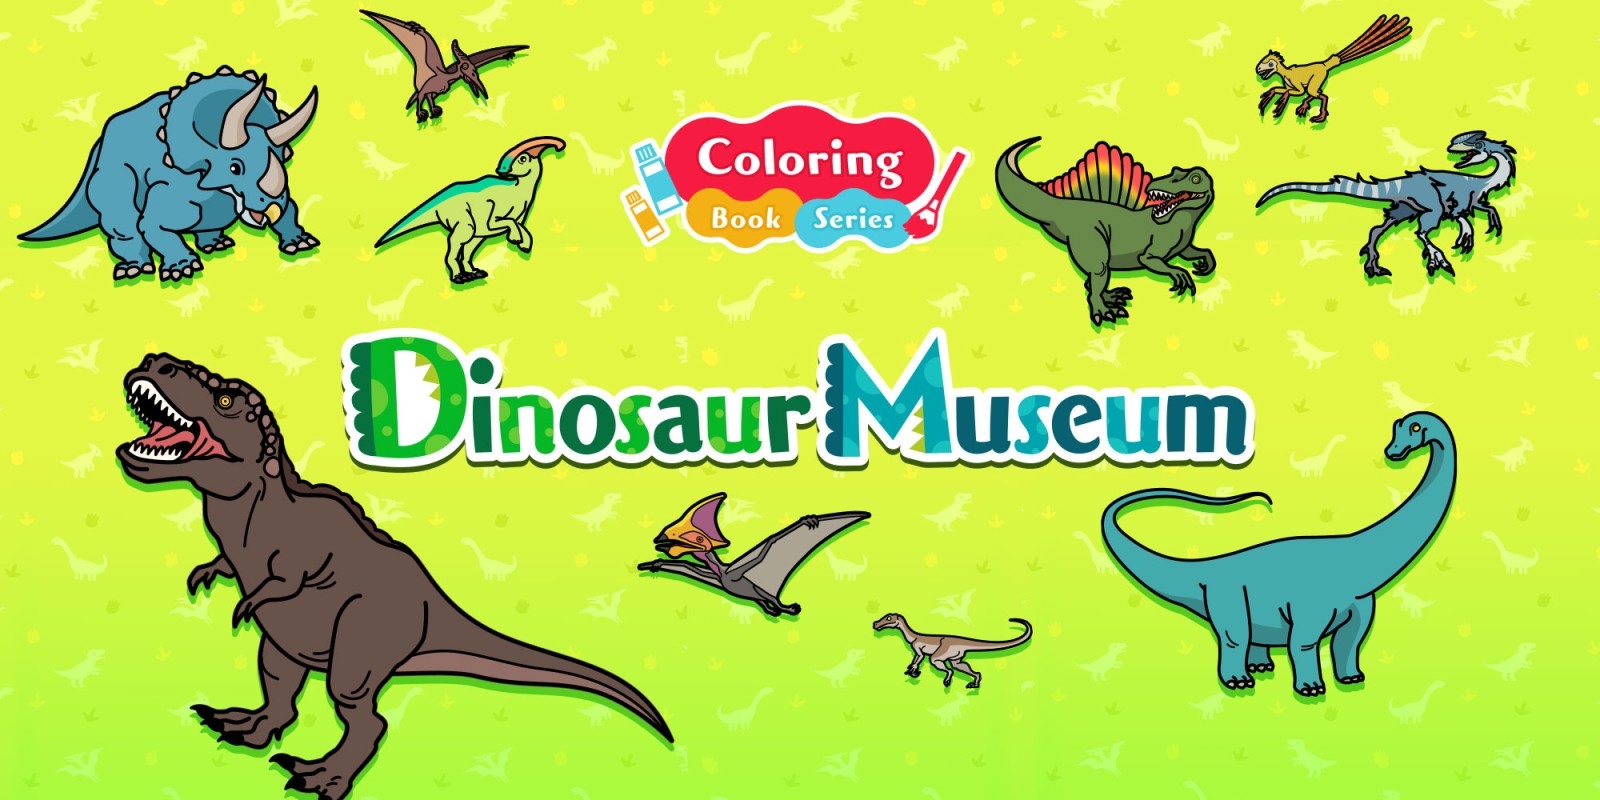 Coloring book series Dinosaur Museum